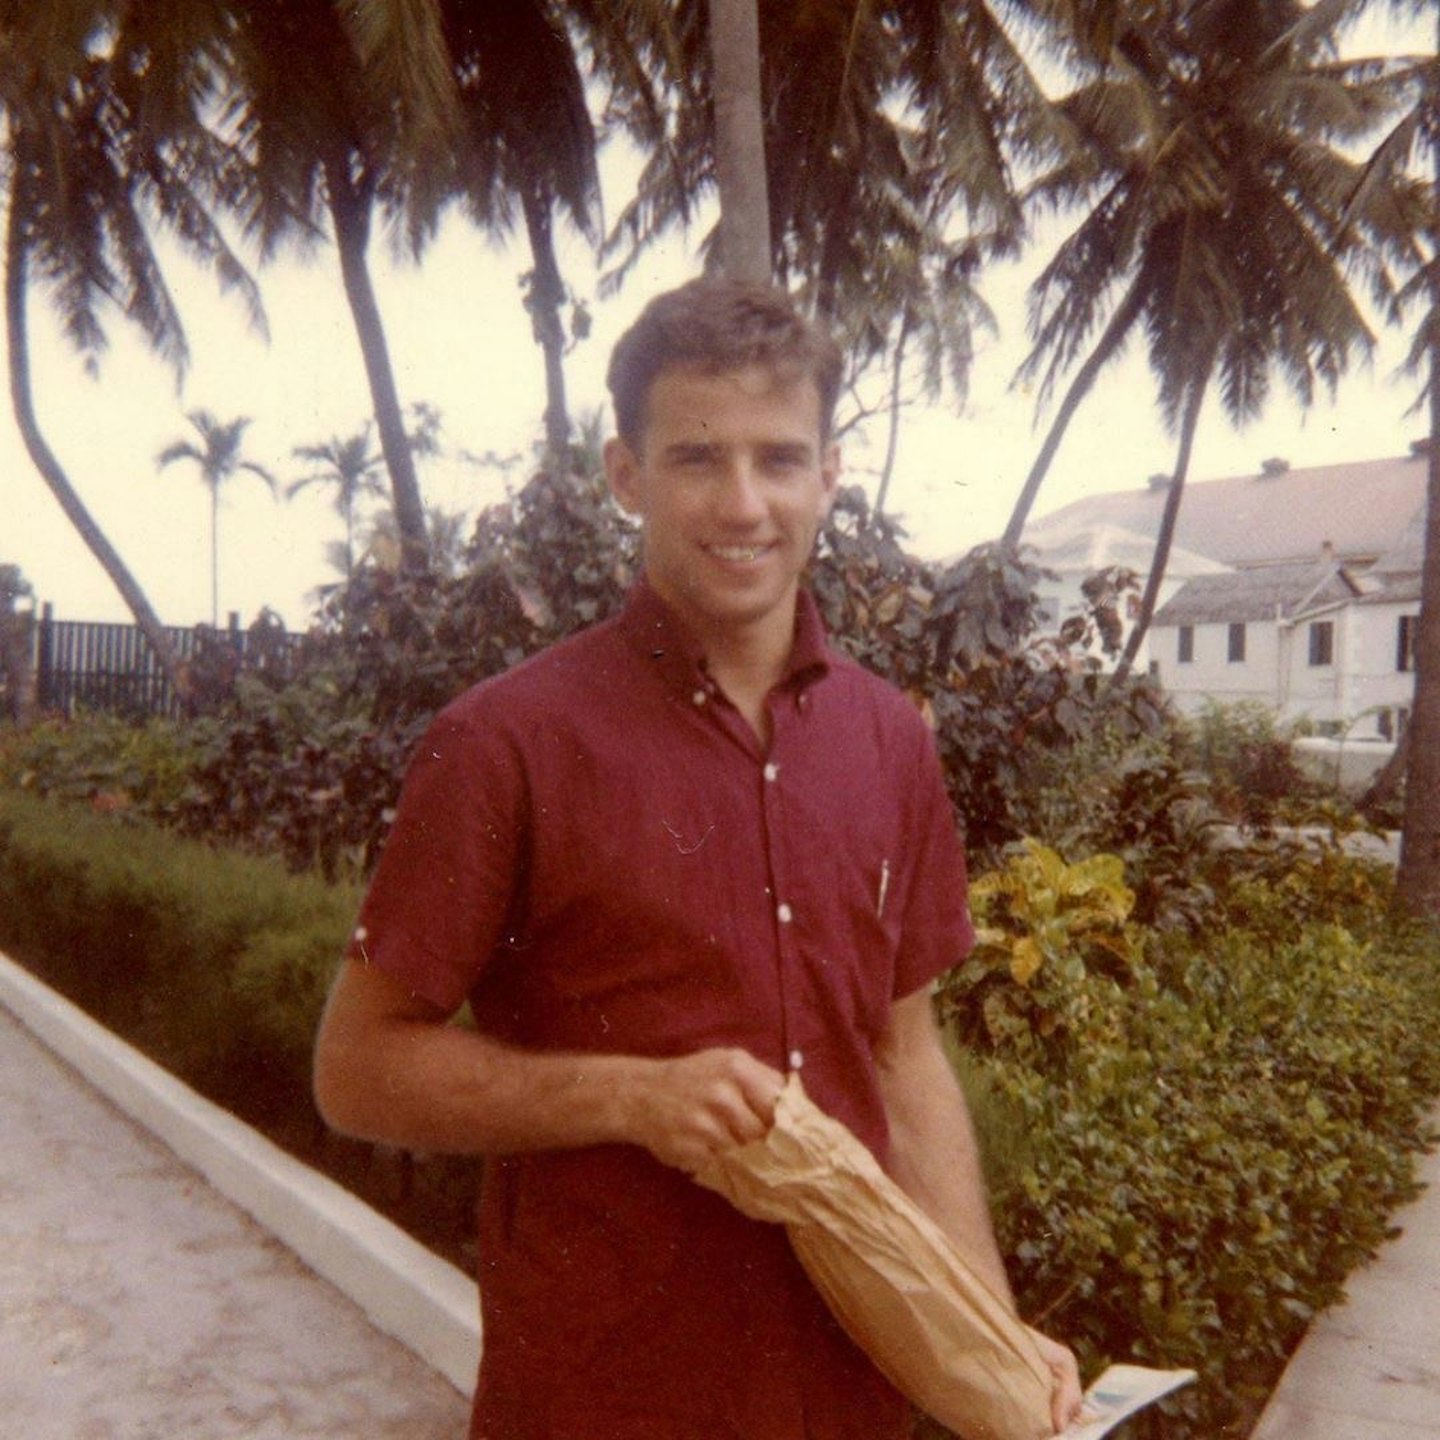 Young, Hot Joe Biden